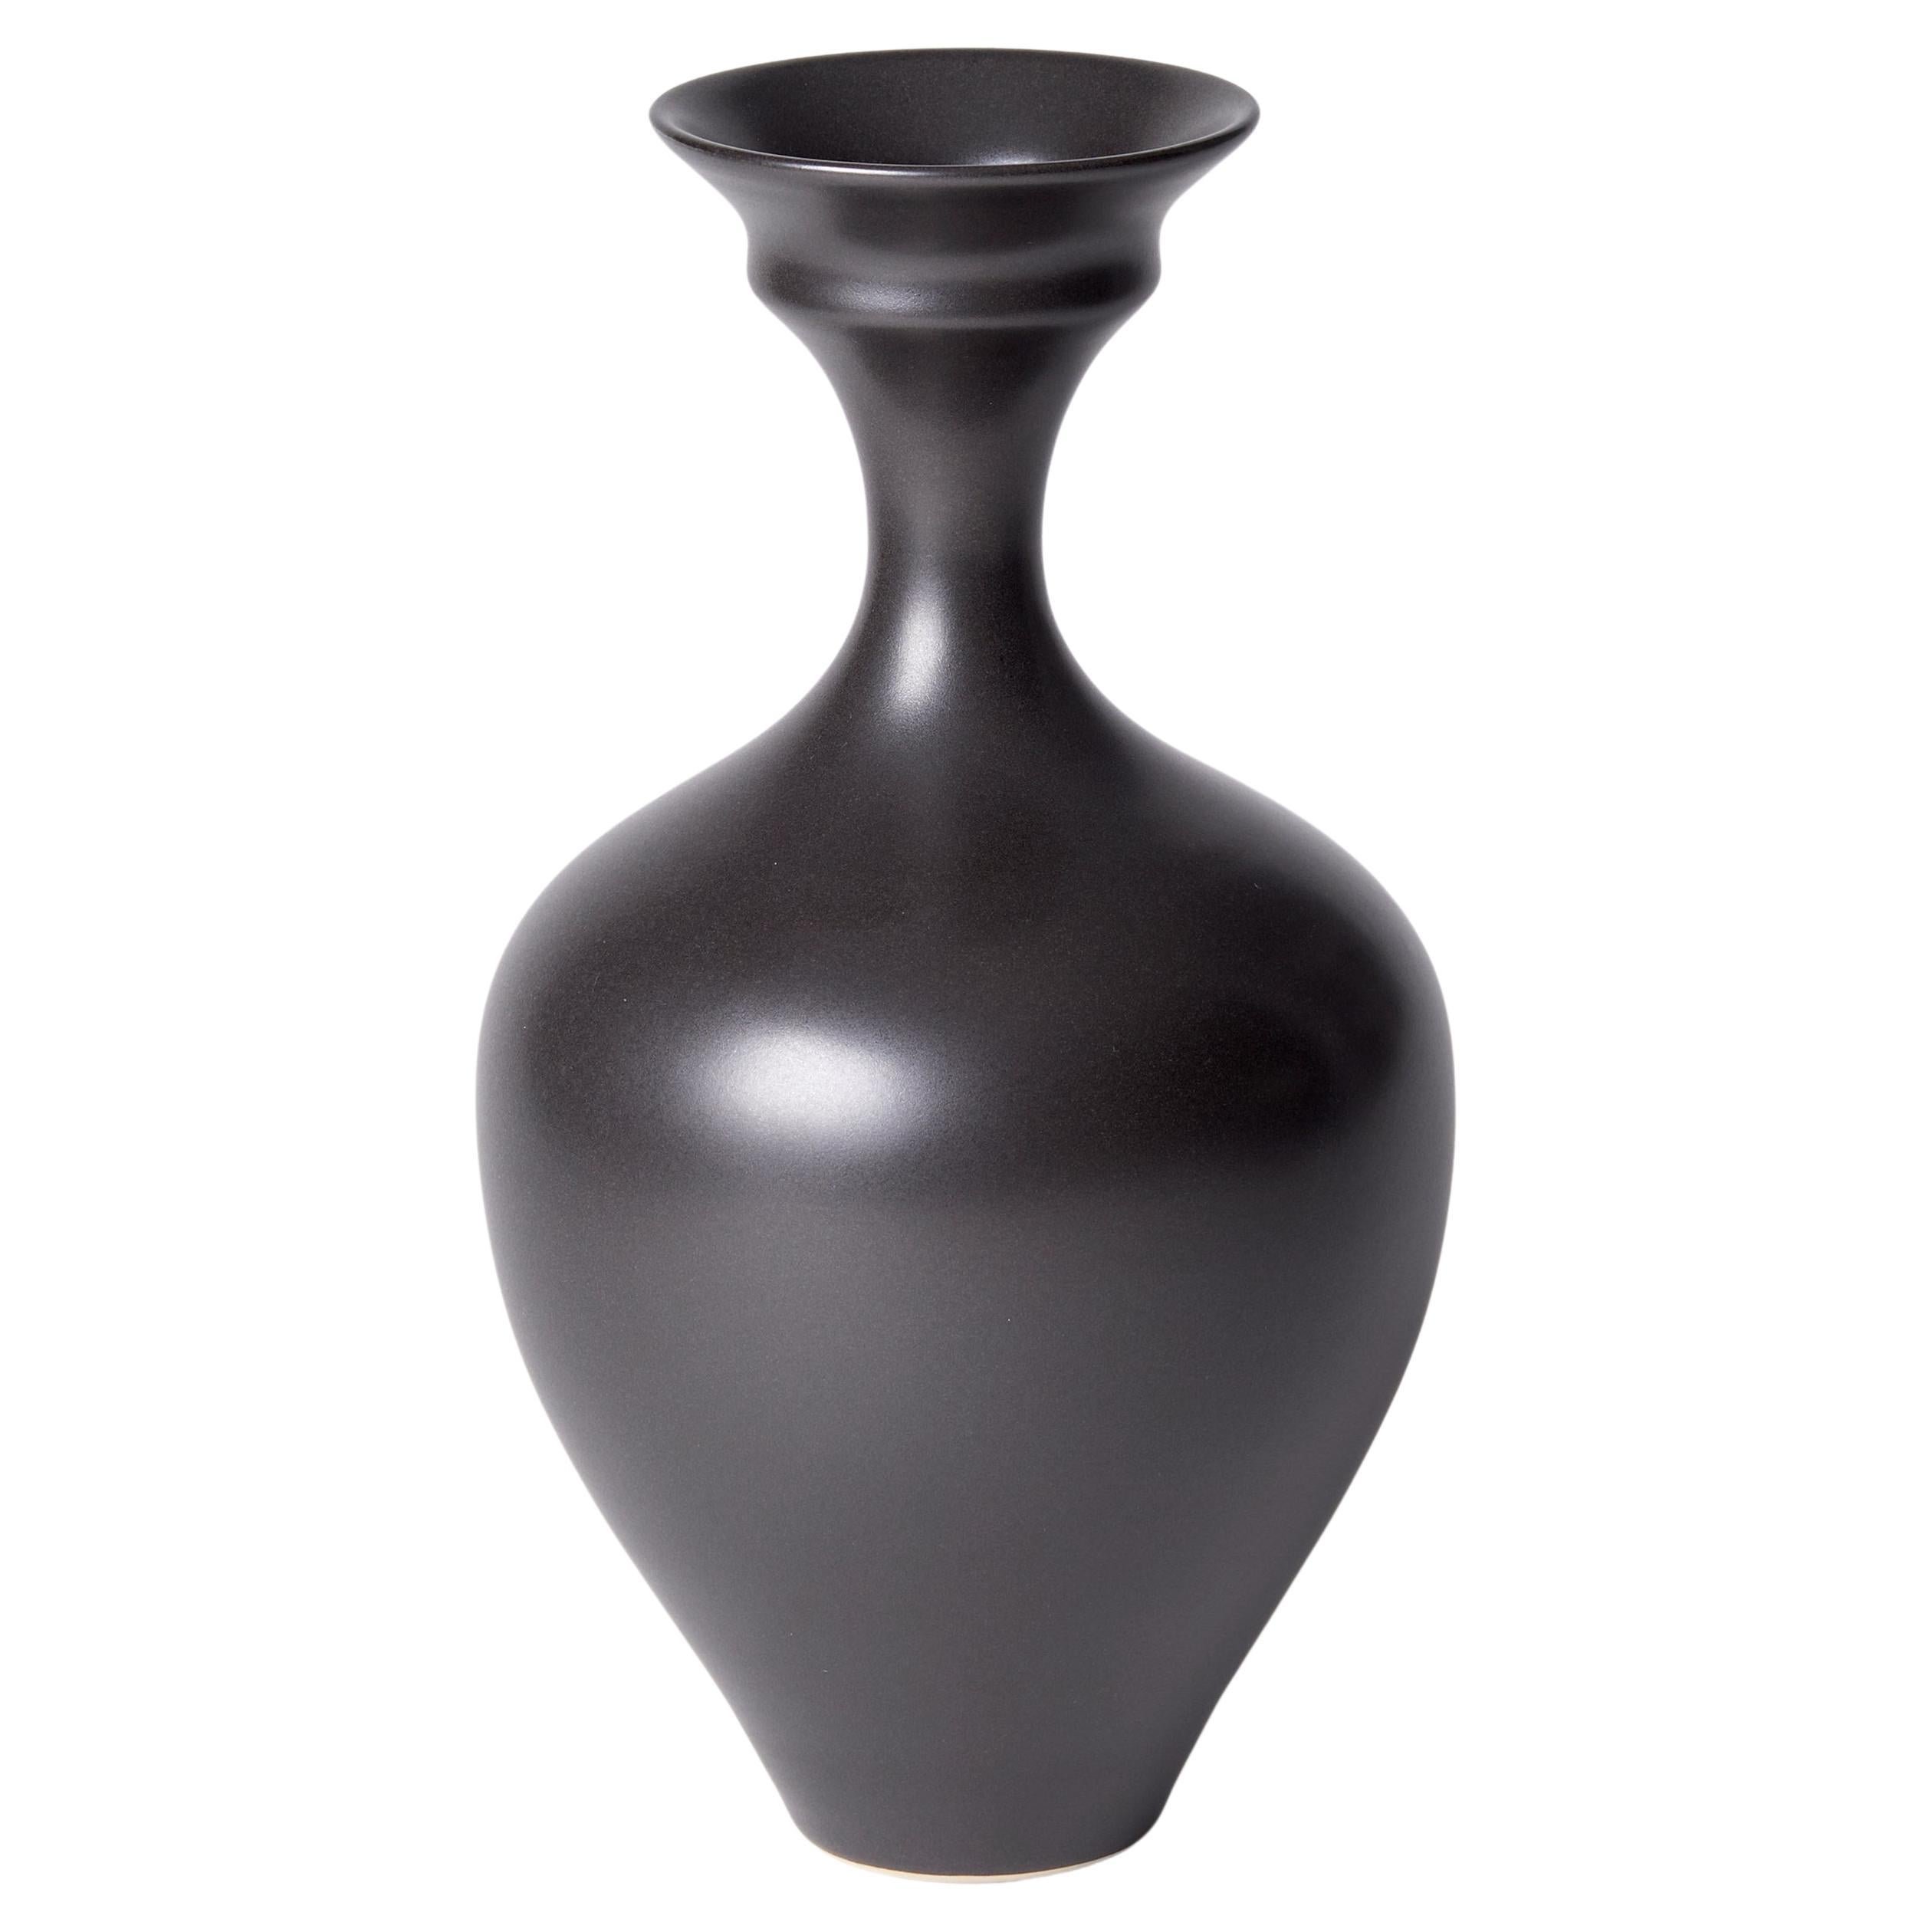 Dish Mouth Vase III, a Unique Black / Ebony Porcelain Vase by Vivienne Foley For Sale